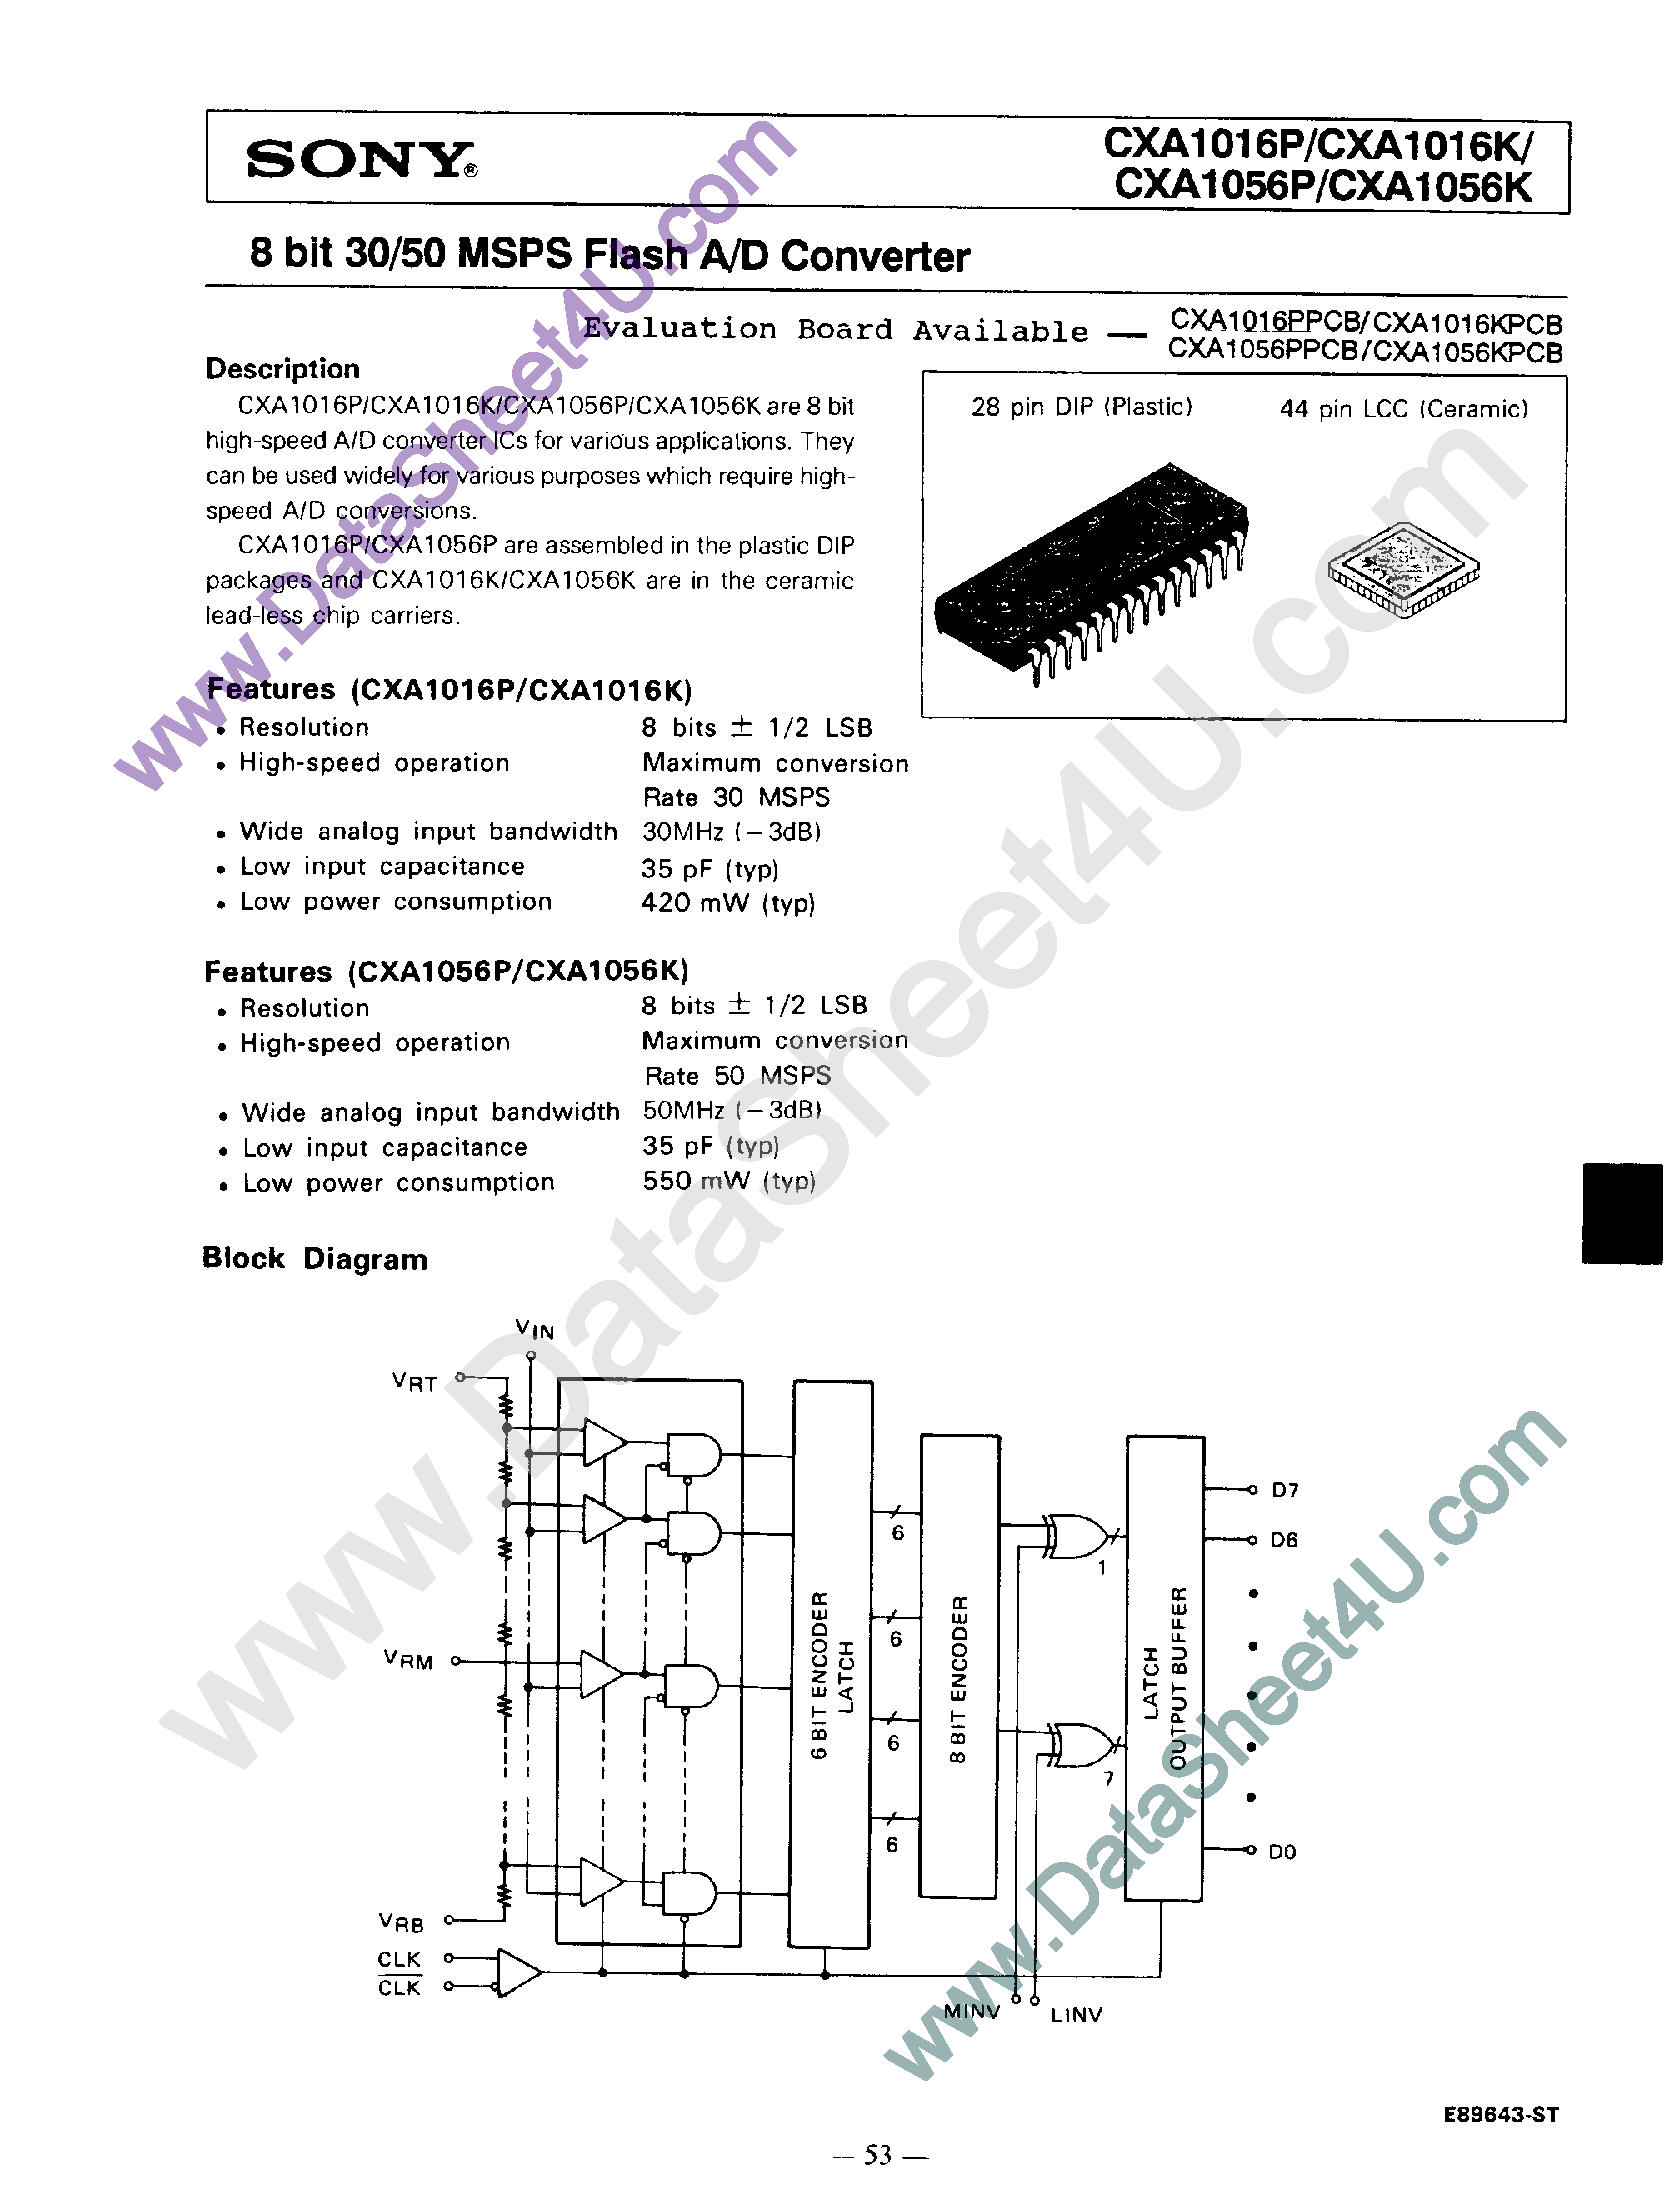 Datasheet CXA1016 - (CXA1016 / CXA1056) 8 Bit 30/50 MSPS Flash A/D Converter page 1